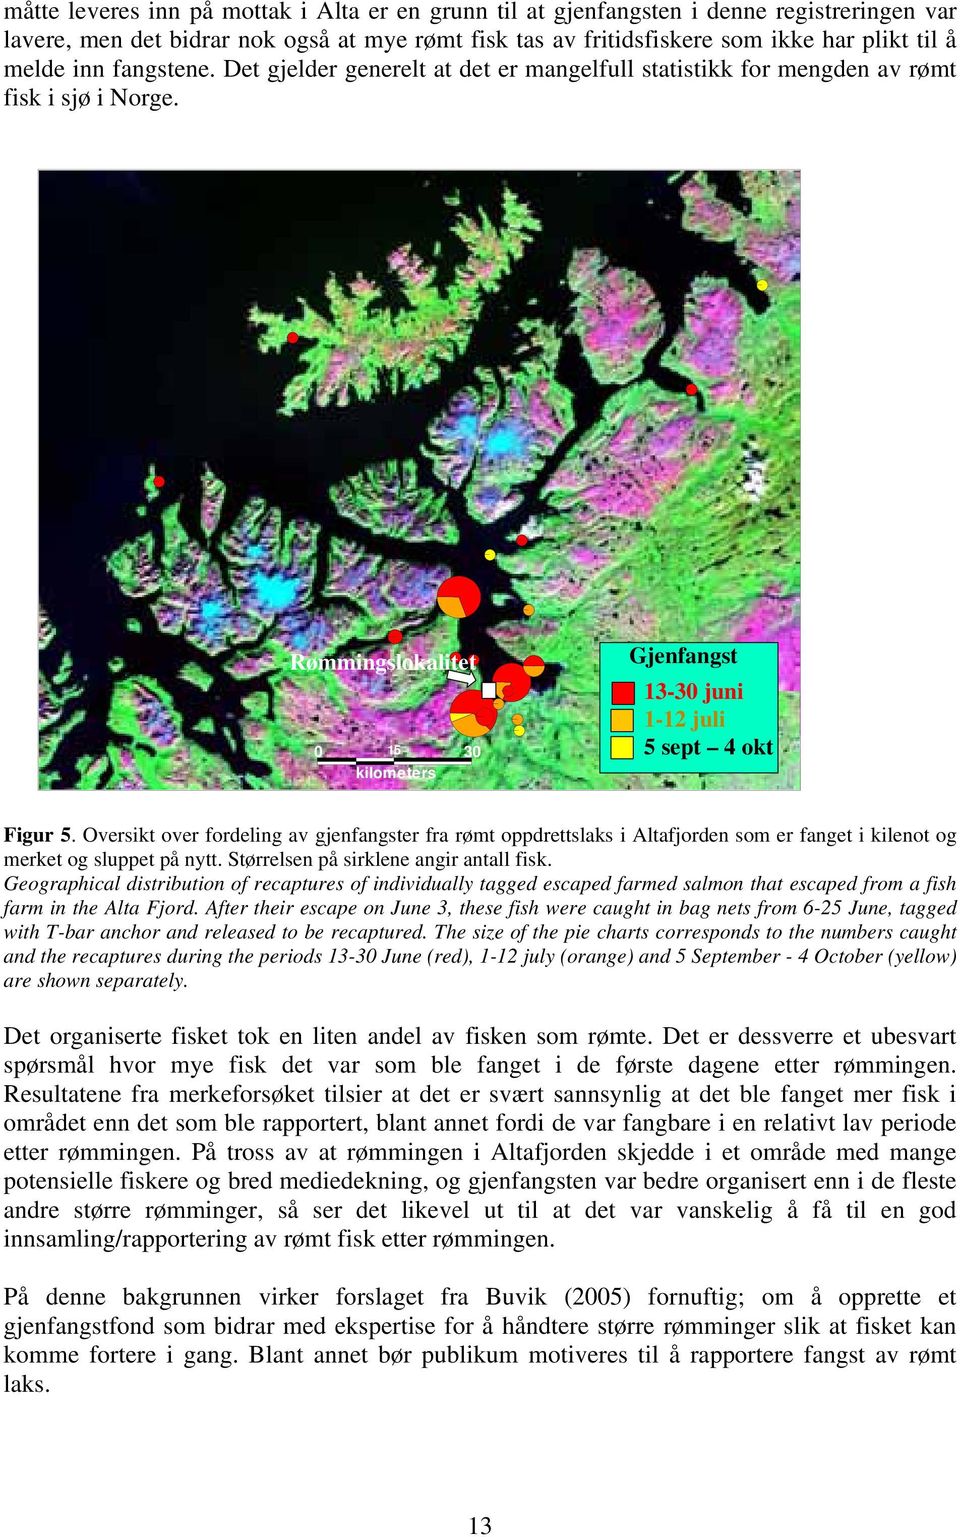 Oversikt over fordeling av gjenfangster fra rømt oppdrettslaks i Altafjorden som er fanget i kilenot og merket og sluppet på nytt. Størrelsen på sirklene angir antall fisk.